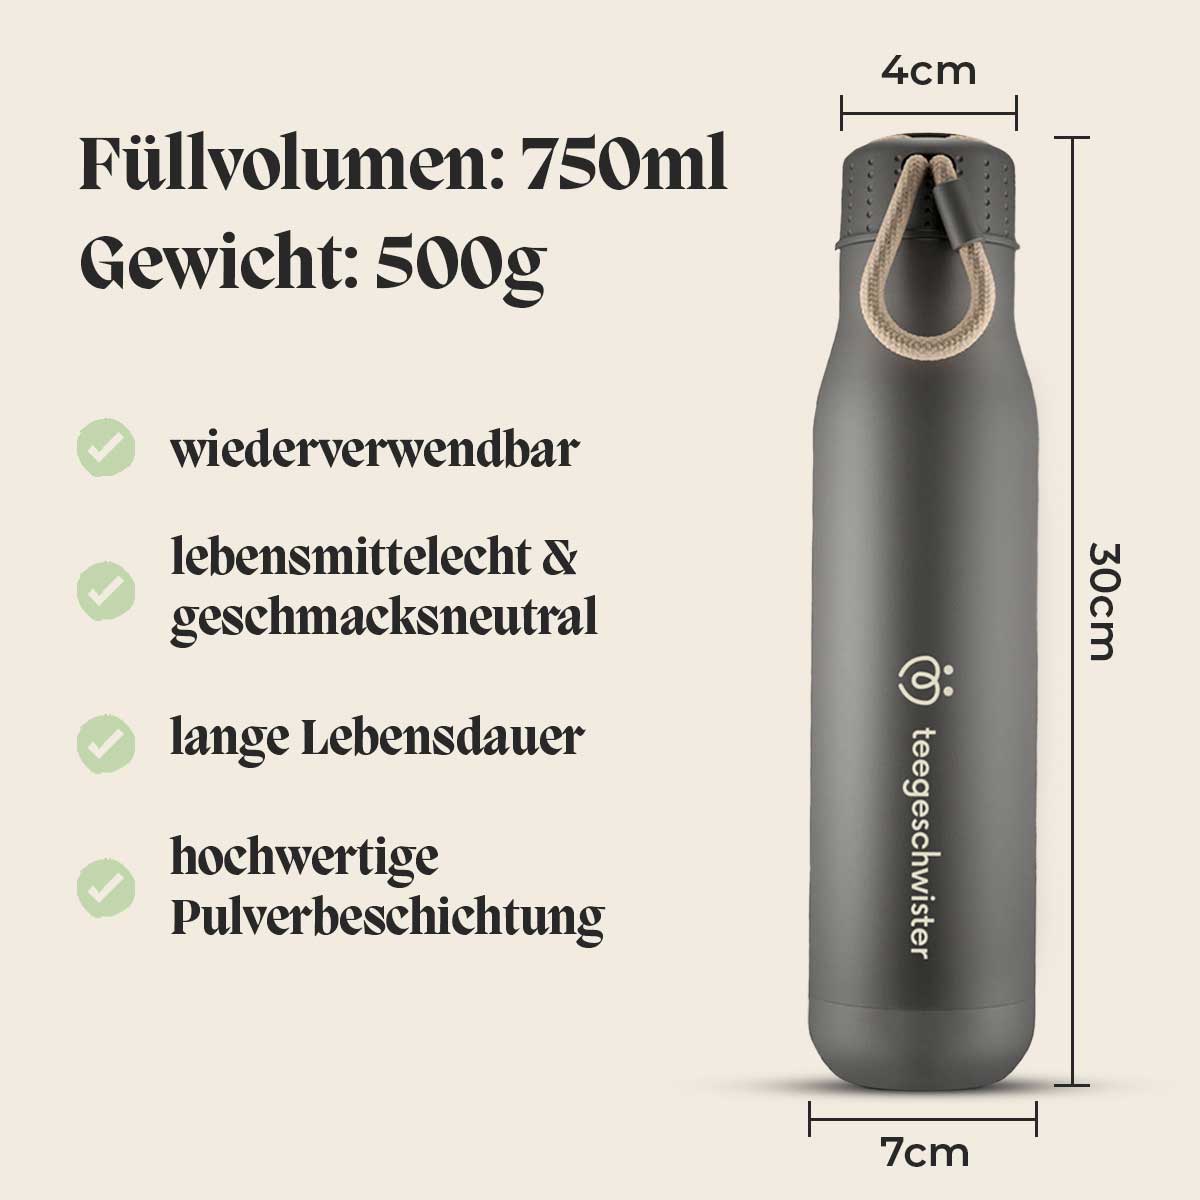 Diese Bild Zeigt die Maße und Eigenschaften der Edelstahl Thermosflasche. Das Füllvolumen beträgt 750 ml.